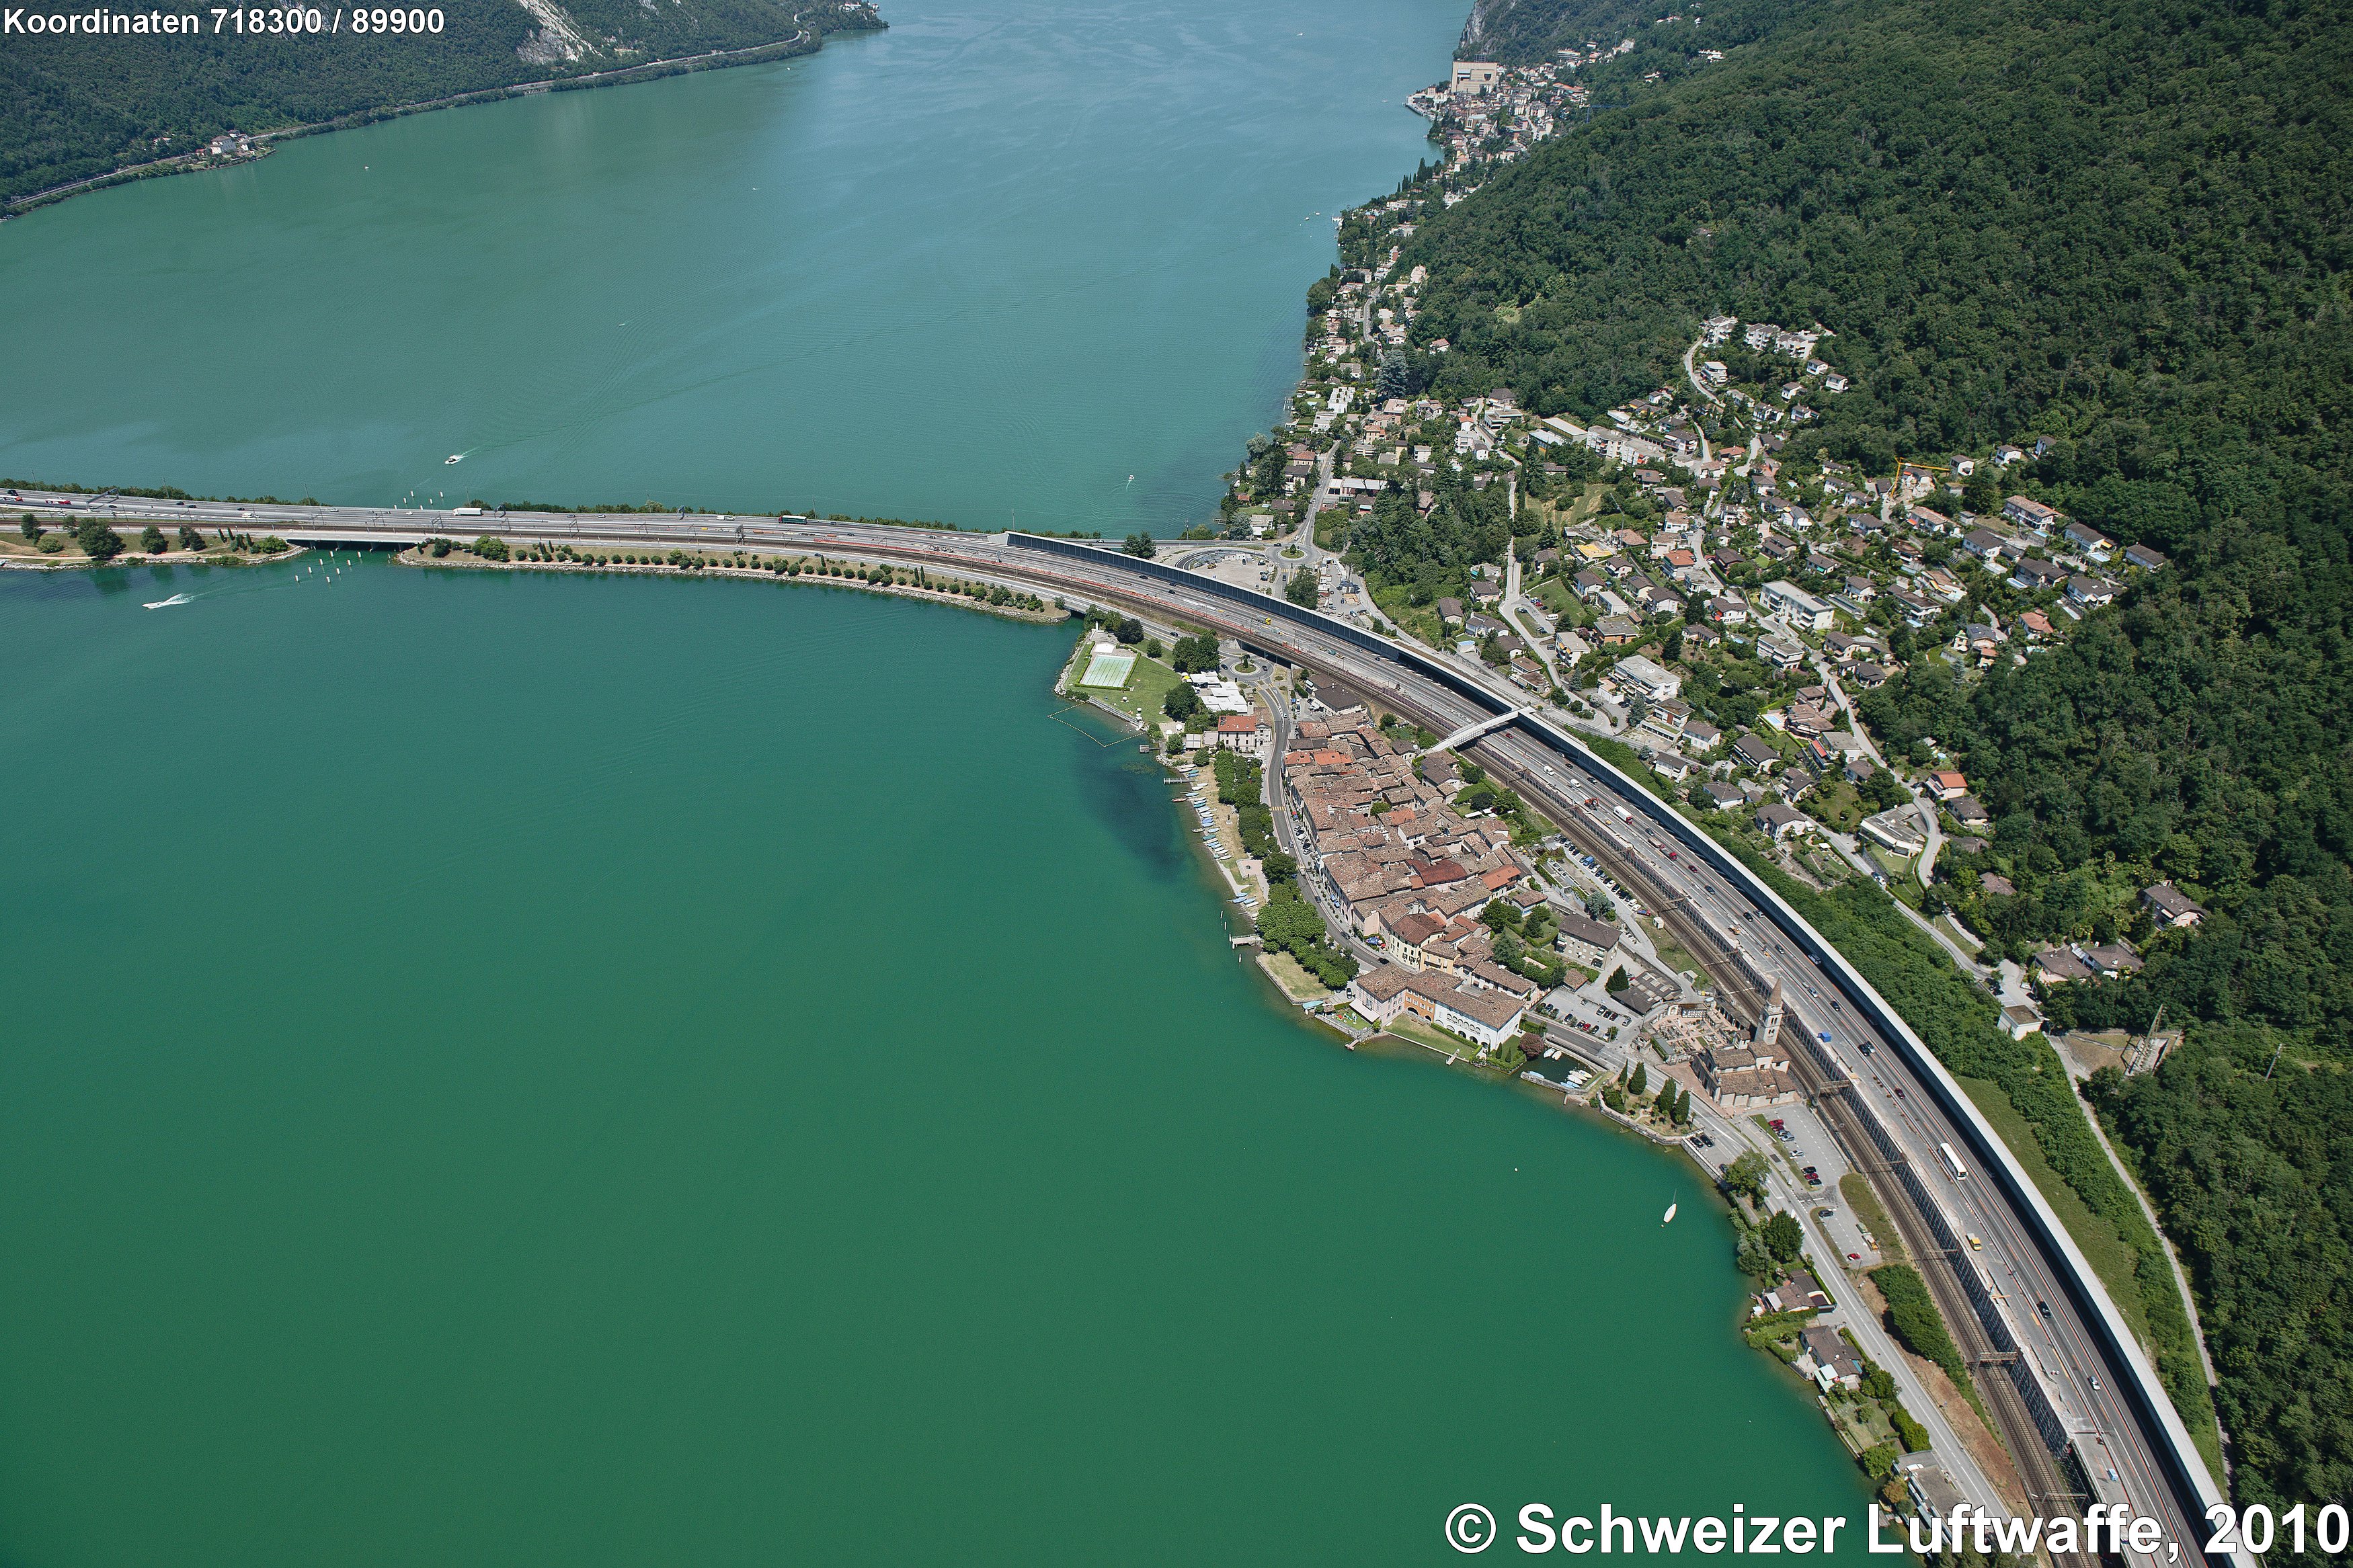 Ort am Luganer-See: Bissone, hinter der Autobahn A2 (Chiasso - Basel): Bissone-Roncato. Damm von Melide.Ortschaft ganz oben im Bild: Campione (Italien), Casino di Botta